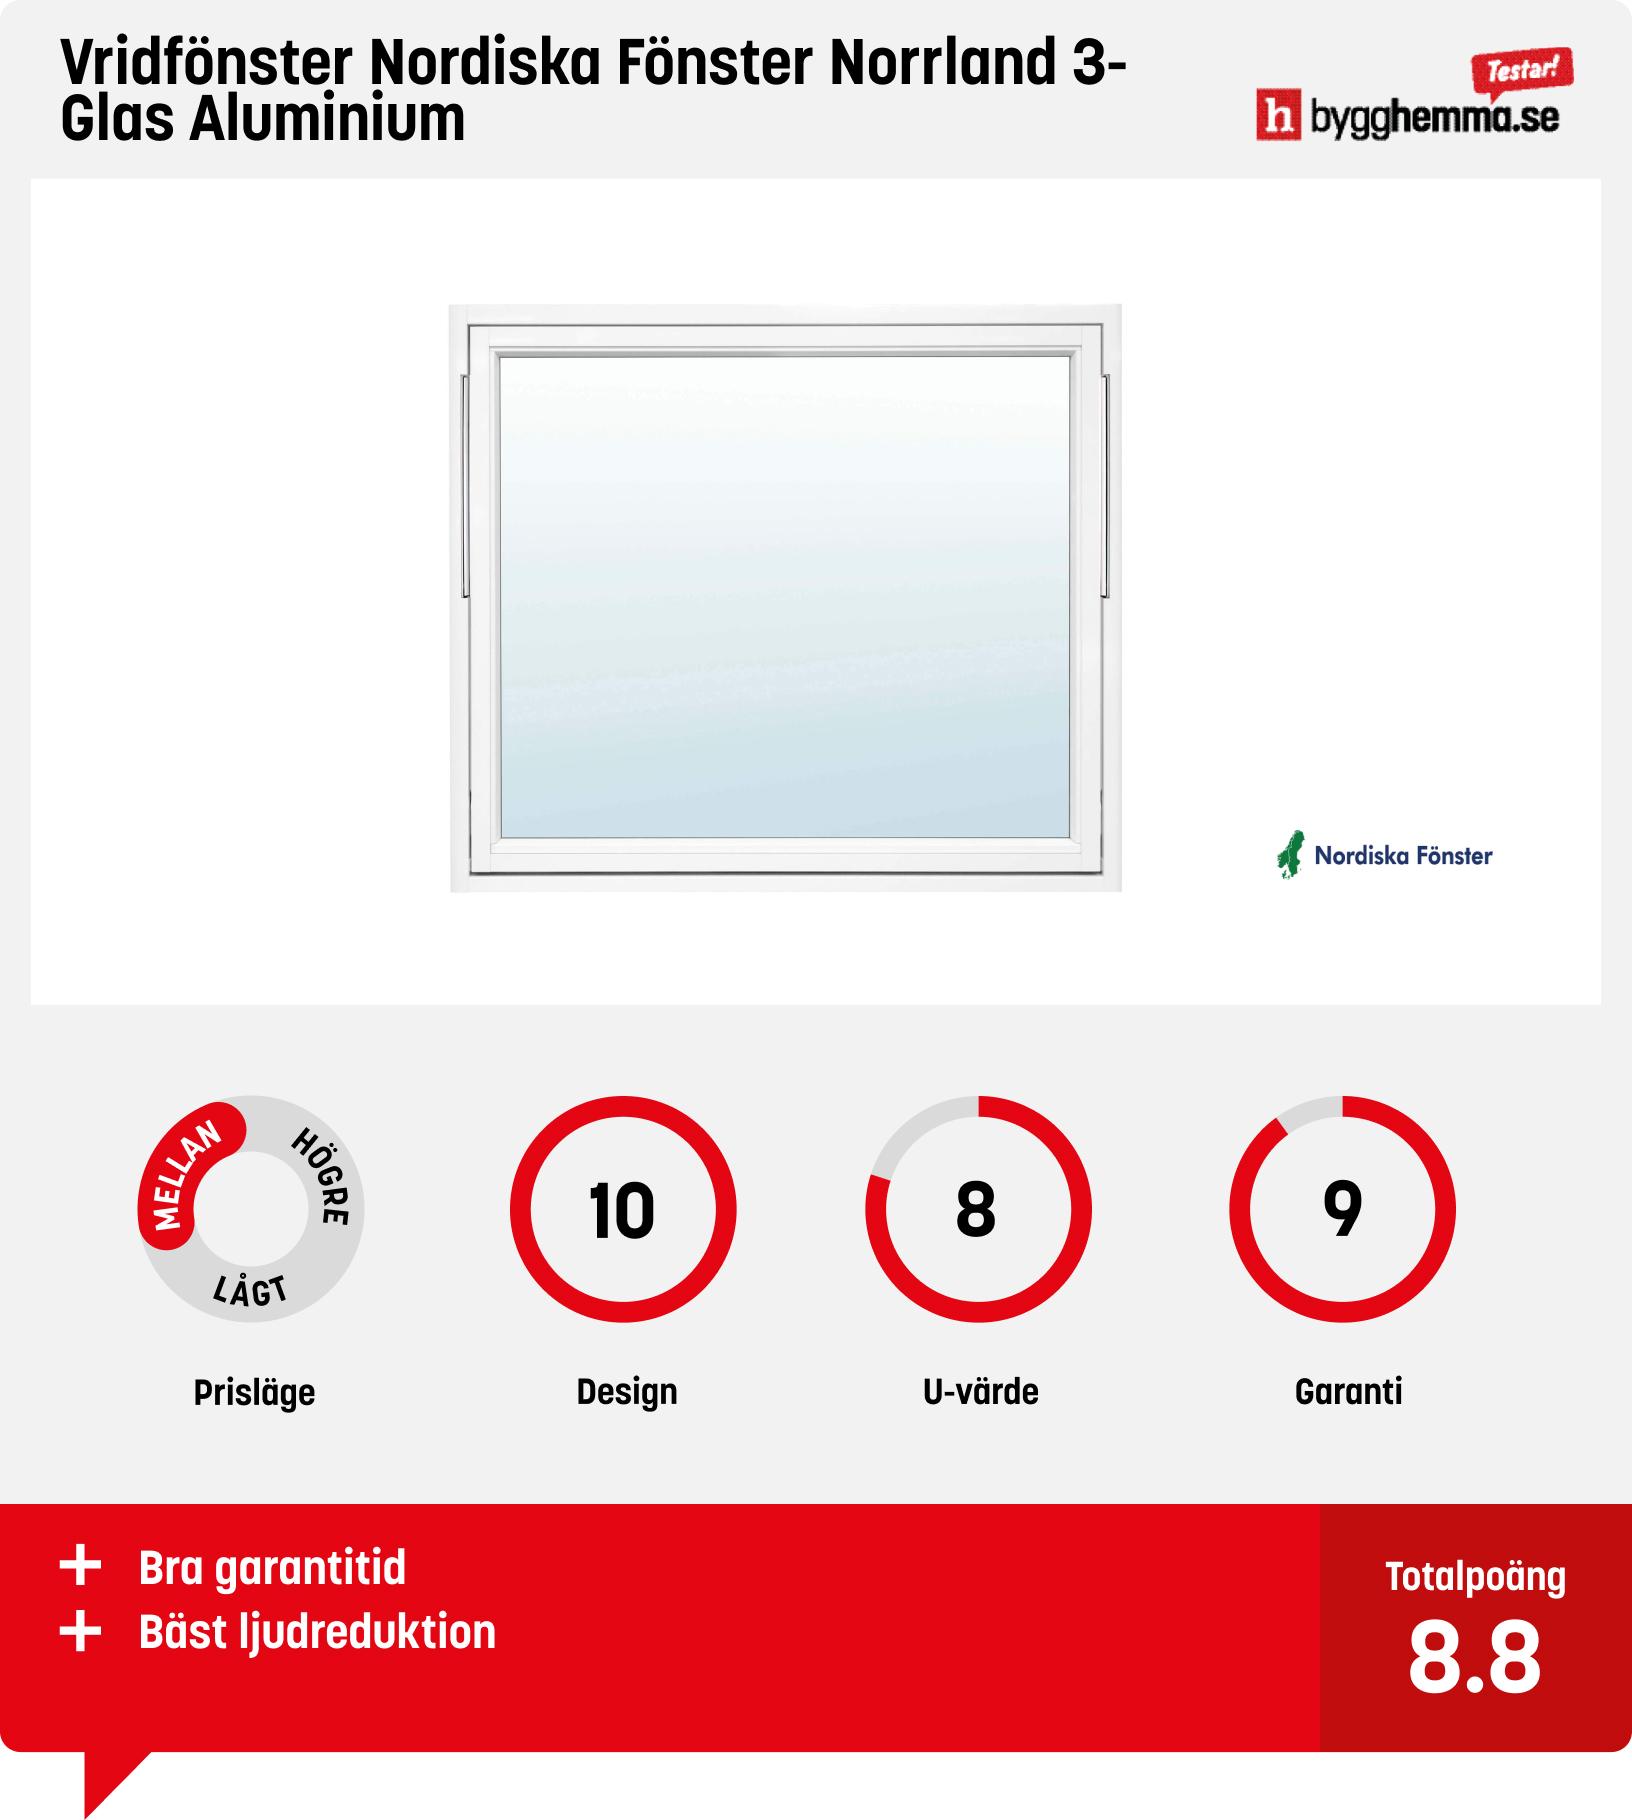 Aluminiumfönster  - Vridfönster Nordiska Fönster Norrland 3-Glas Aluminium